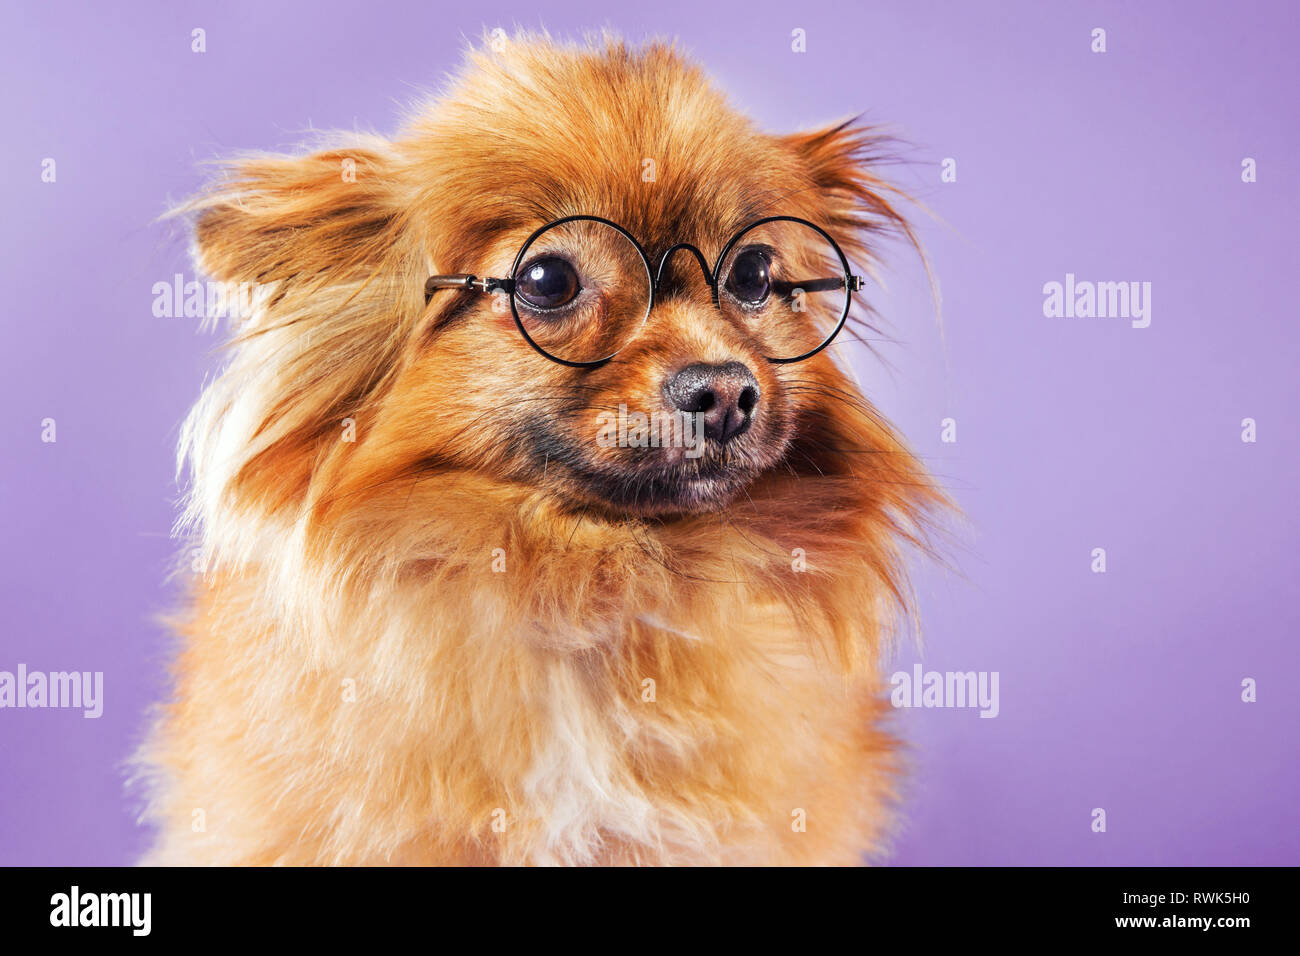 Close-up portrait d'un chien Pomeranian portant des lunettes et à la hors-champ, photographié sur un fond coloré. Banque D'Images